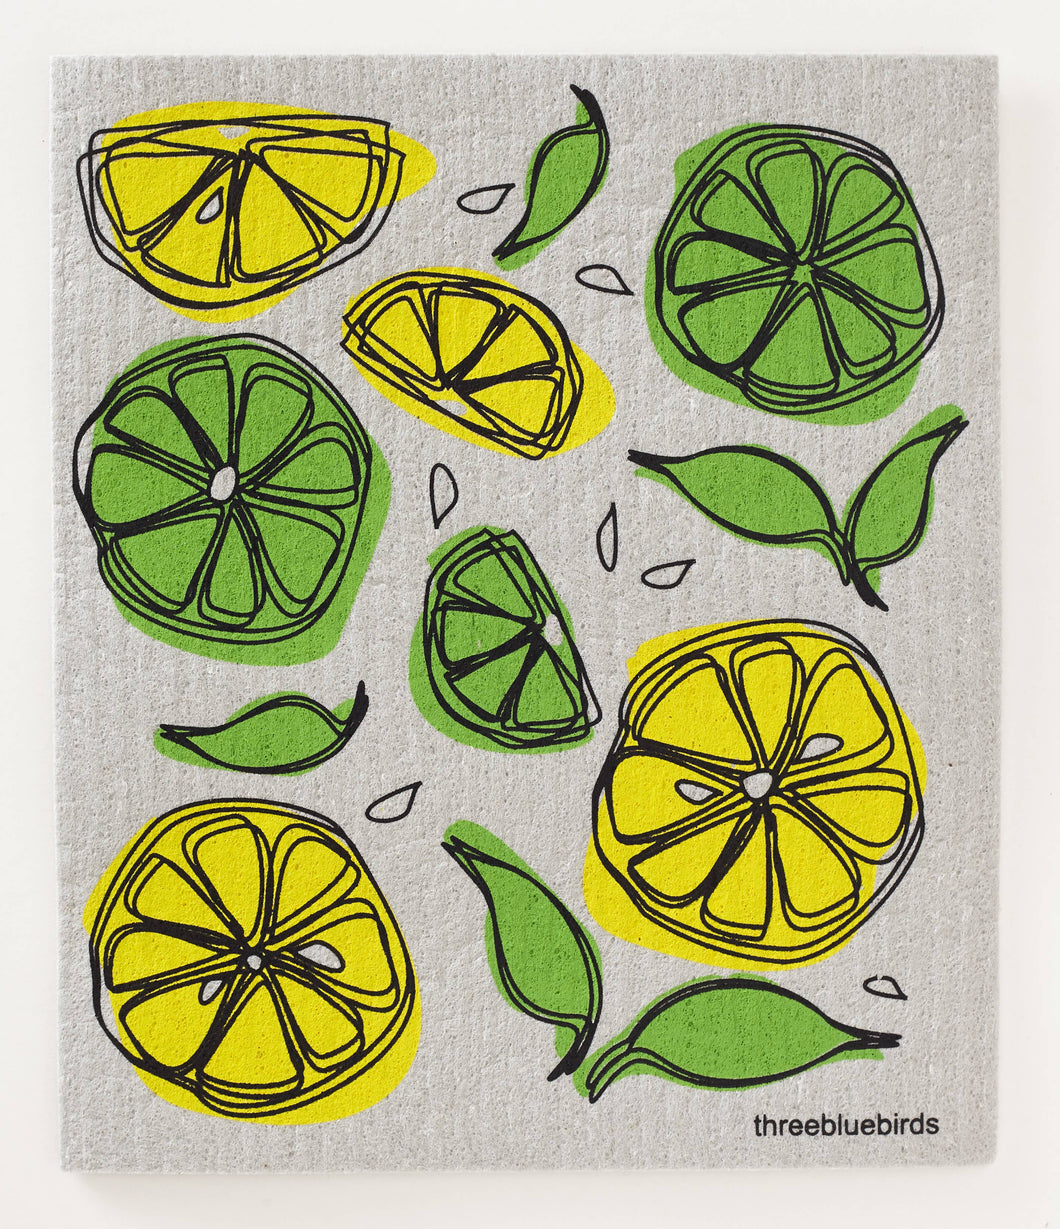 Three Bluebirds Swedish Dishcloths - Lemon Lime on Grey Swedish Dishcloth